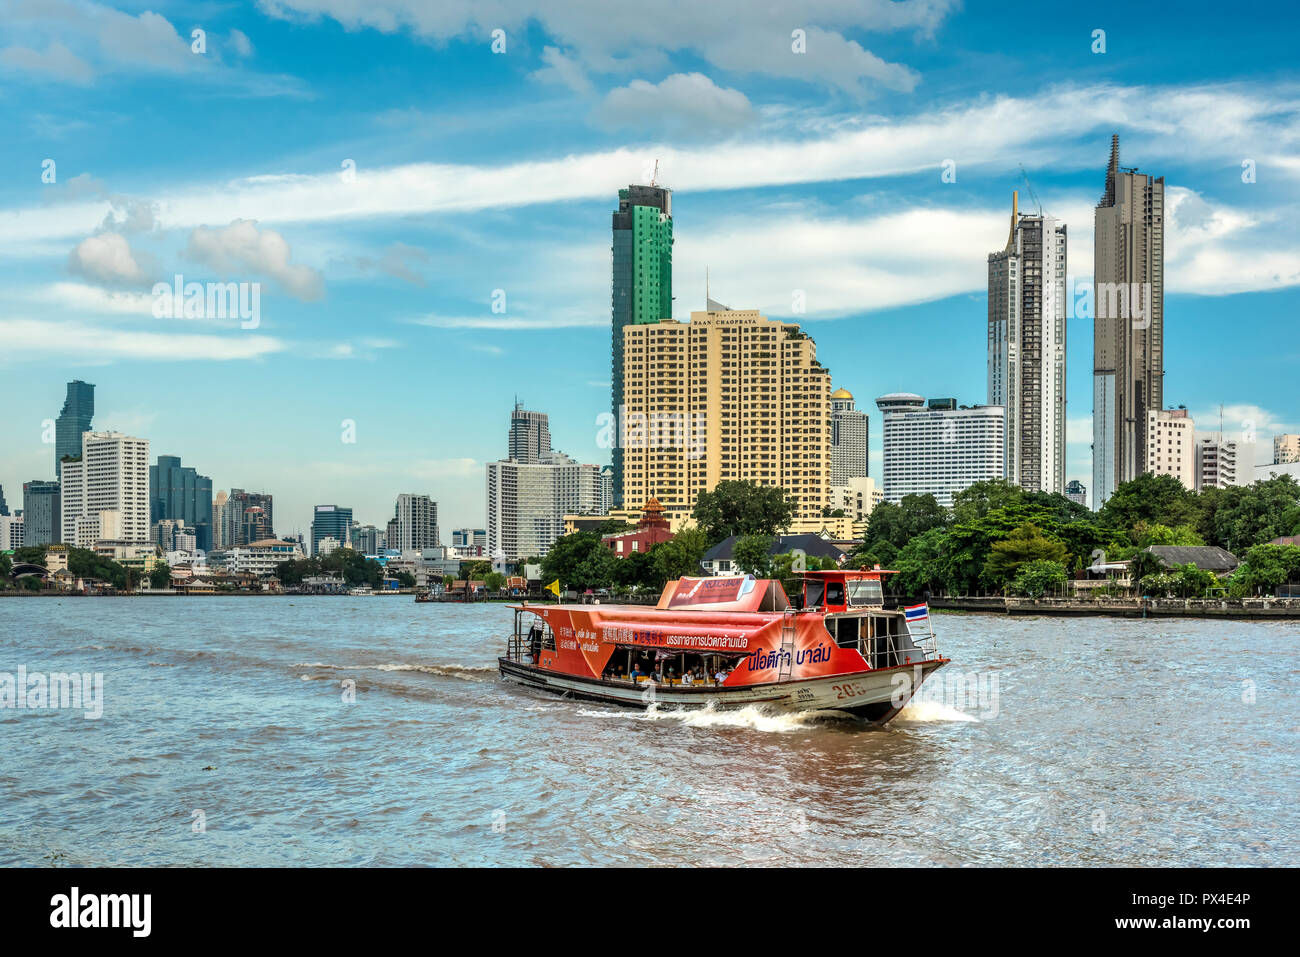 Chao Phraya express boat and city skyline, Bangkok, Thailand Stock Photo